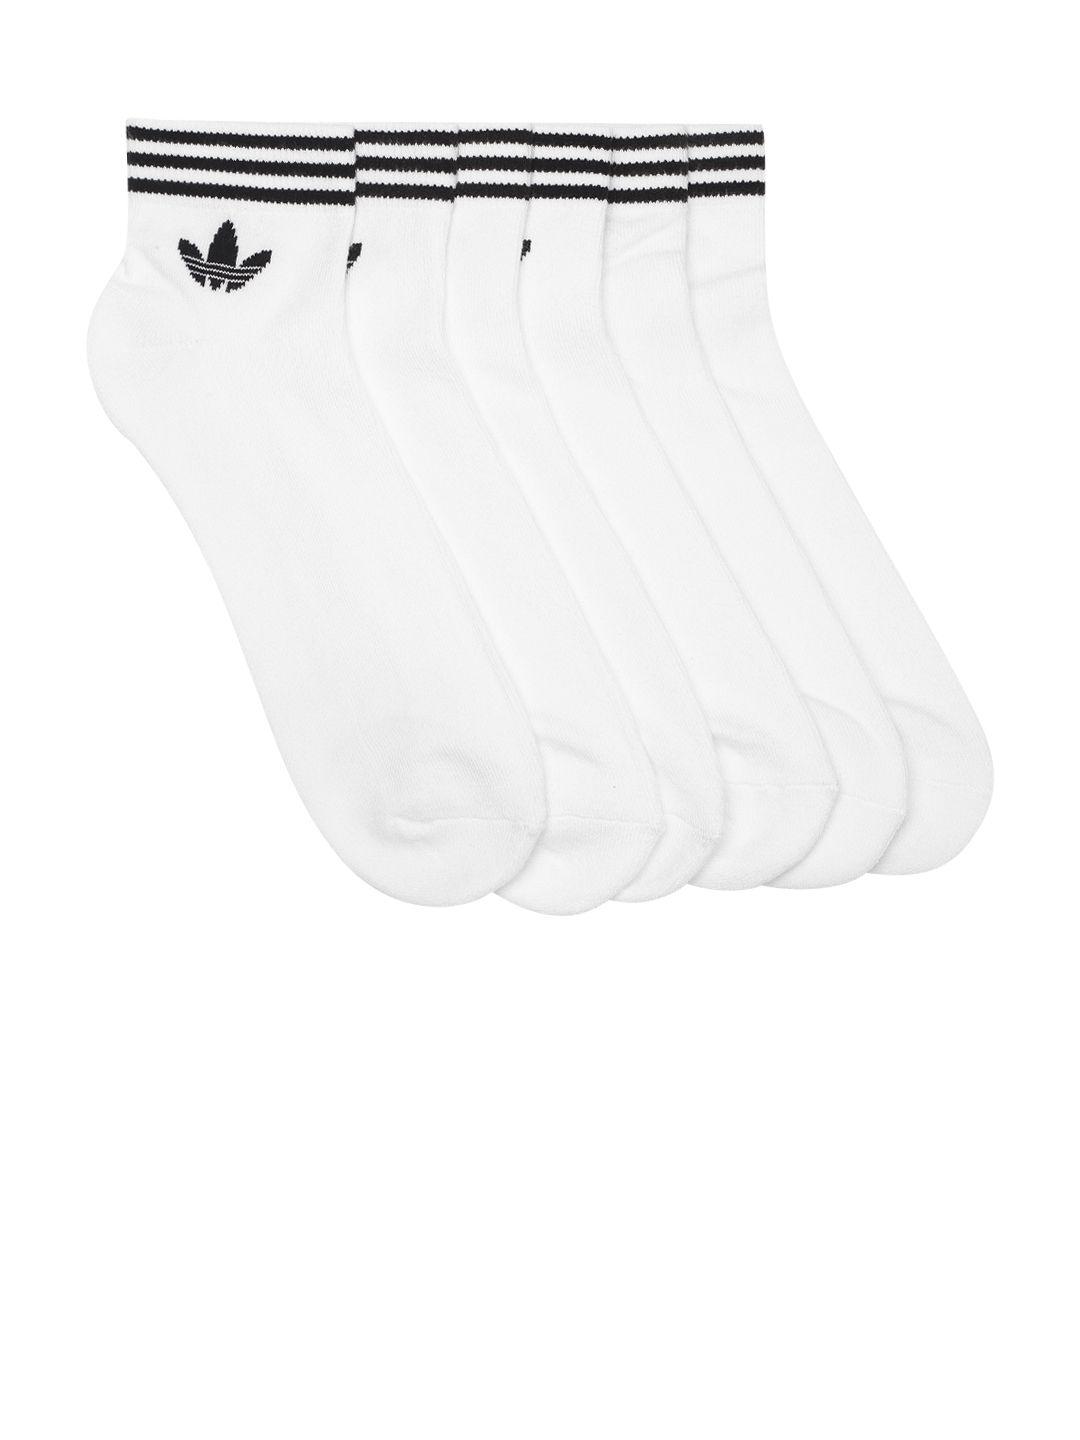 adidas-originals-men-pack-of-3-white-brand-logo-detail-above-ankle-length-socks